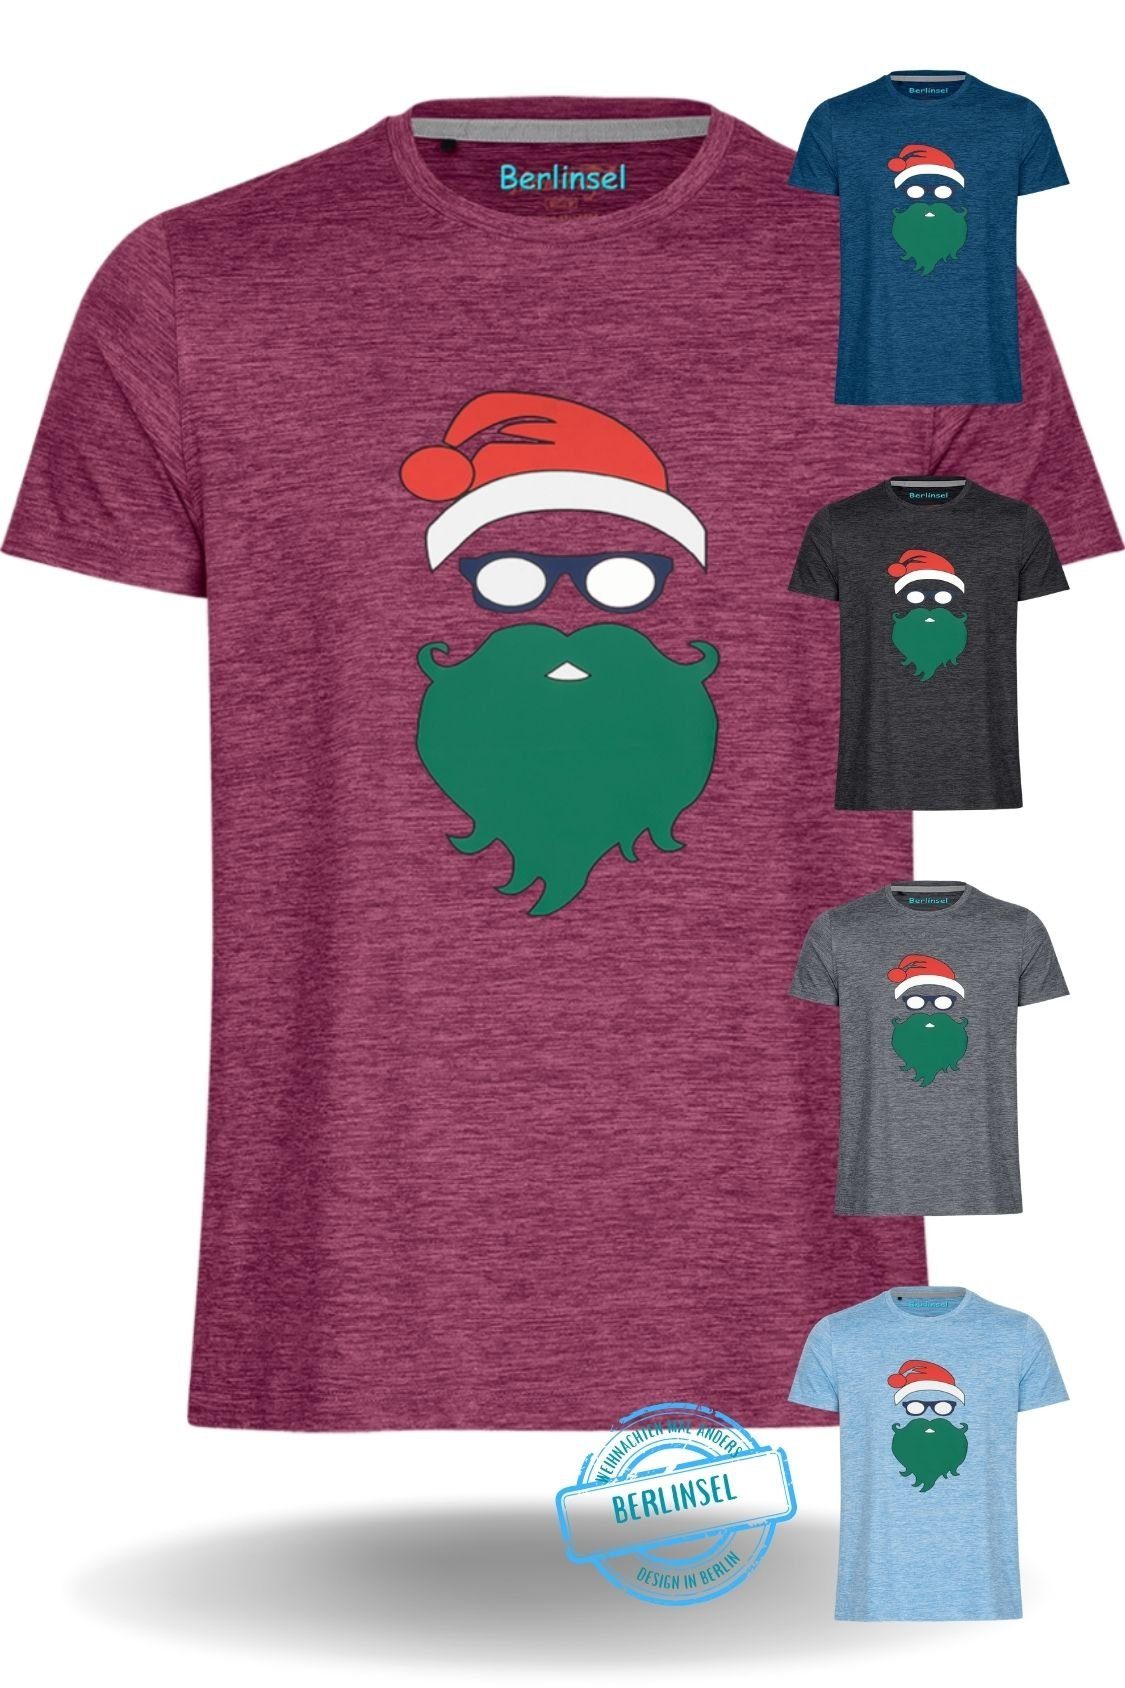 Berlinsel T-Shirt Printshirt Herren Weihnachtsoutfit weinrot Weihnachtsfeier, Weihnachtsshirt Weihnachtsgeschenk, Männer Weihnachtsfoto